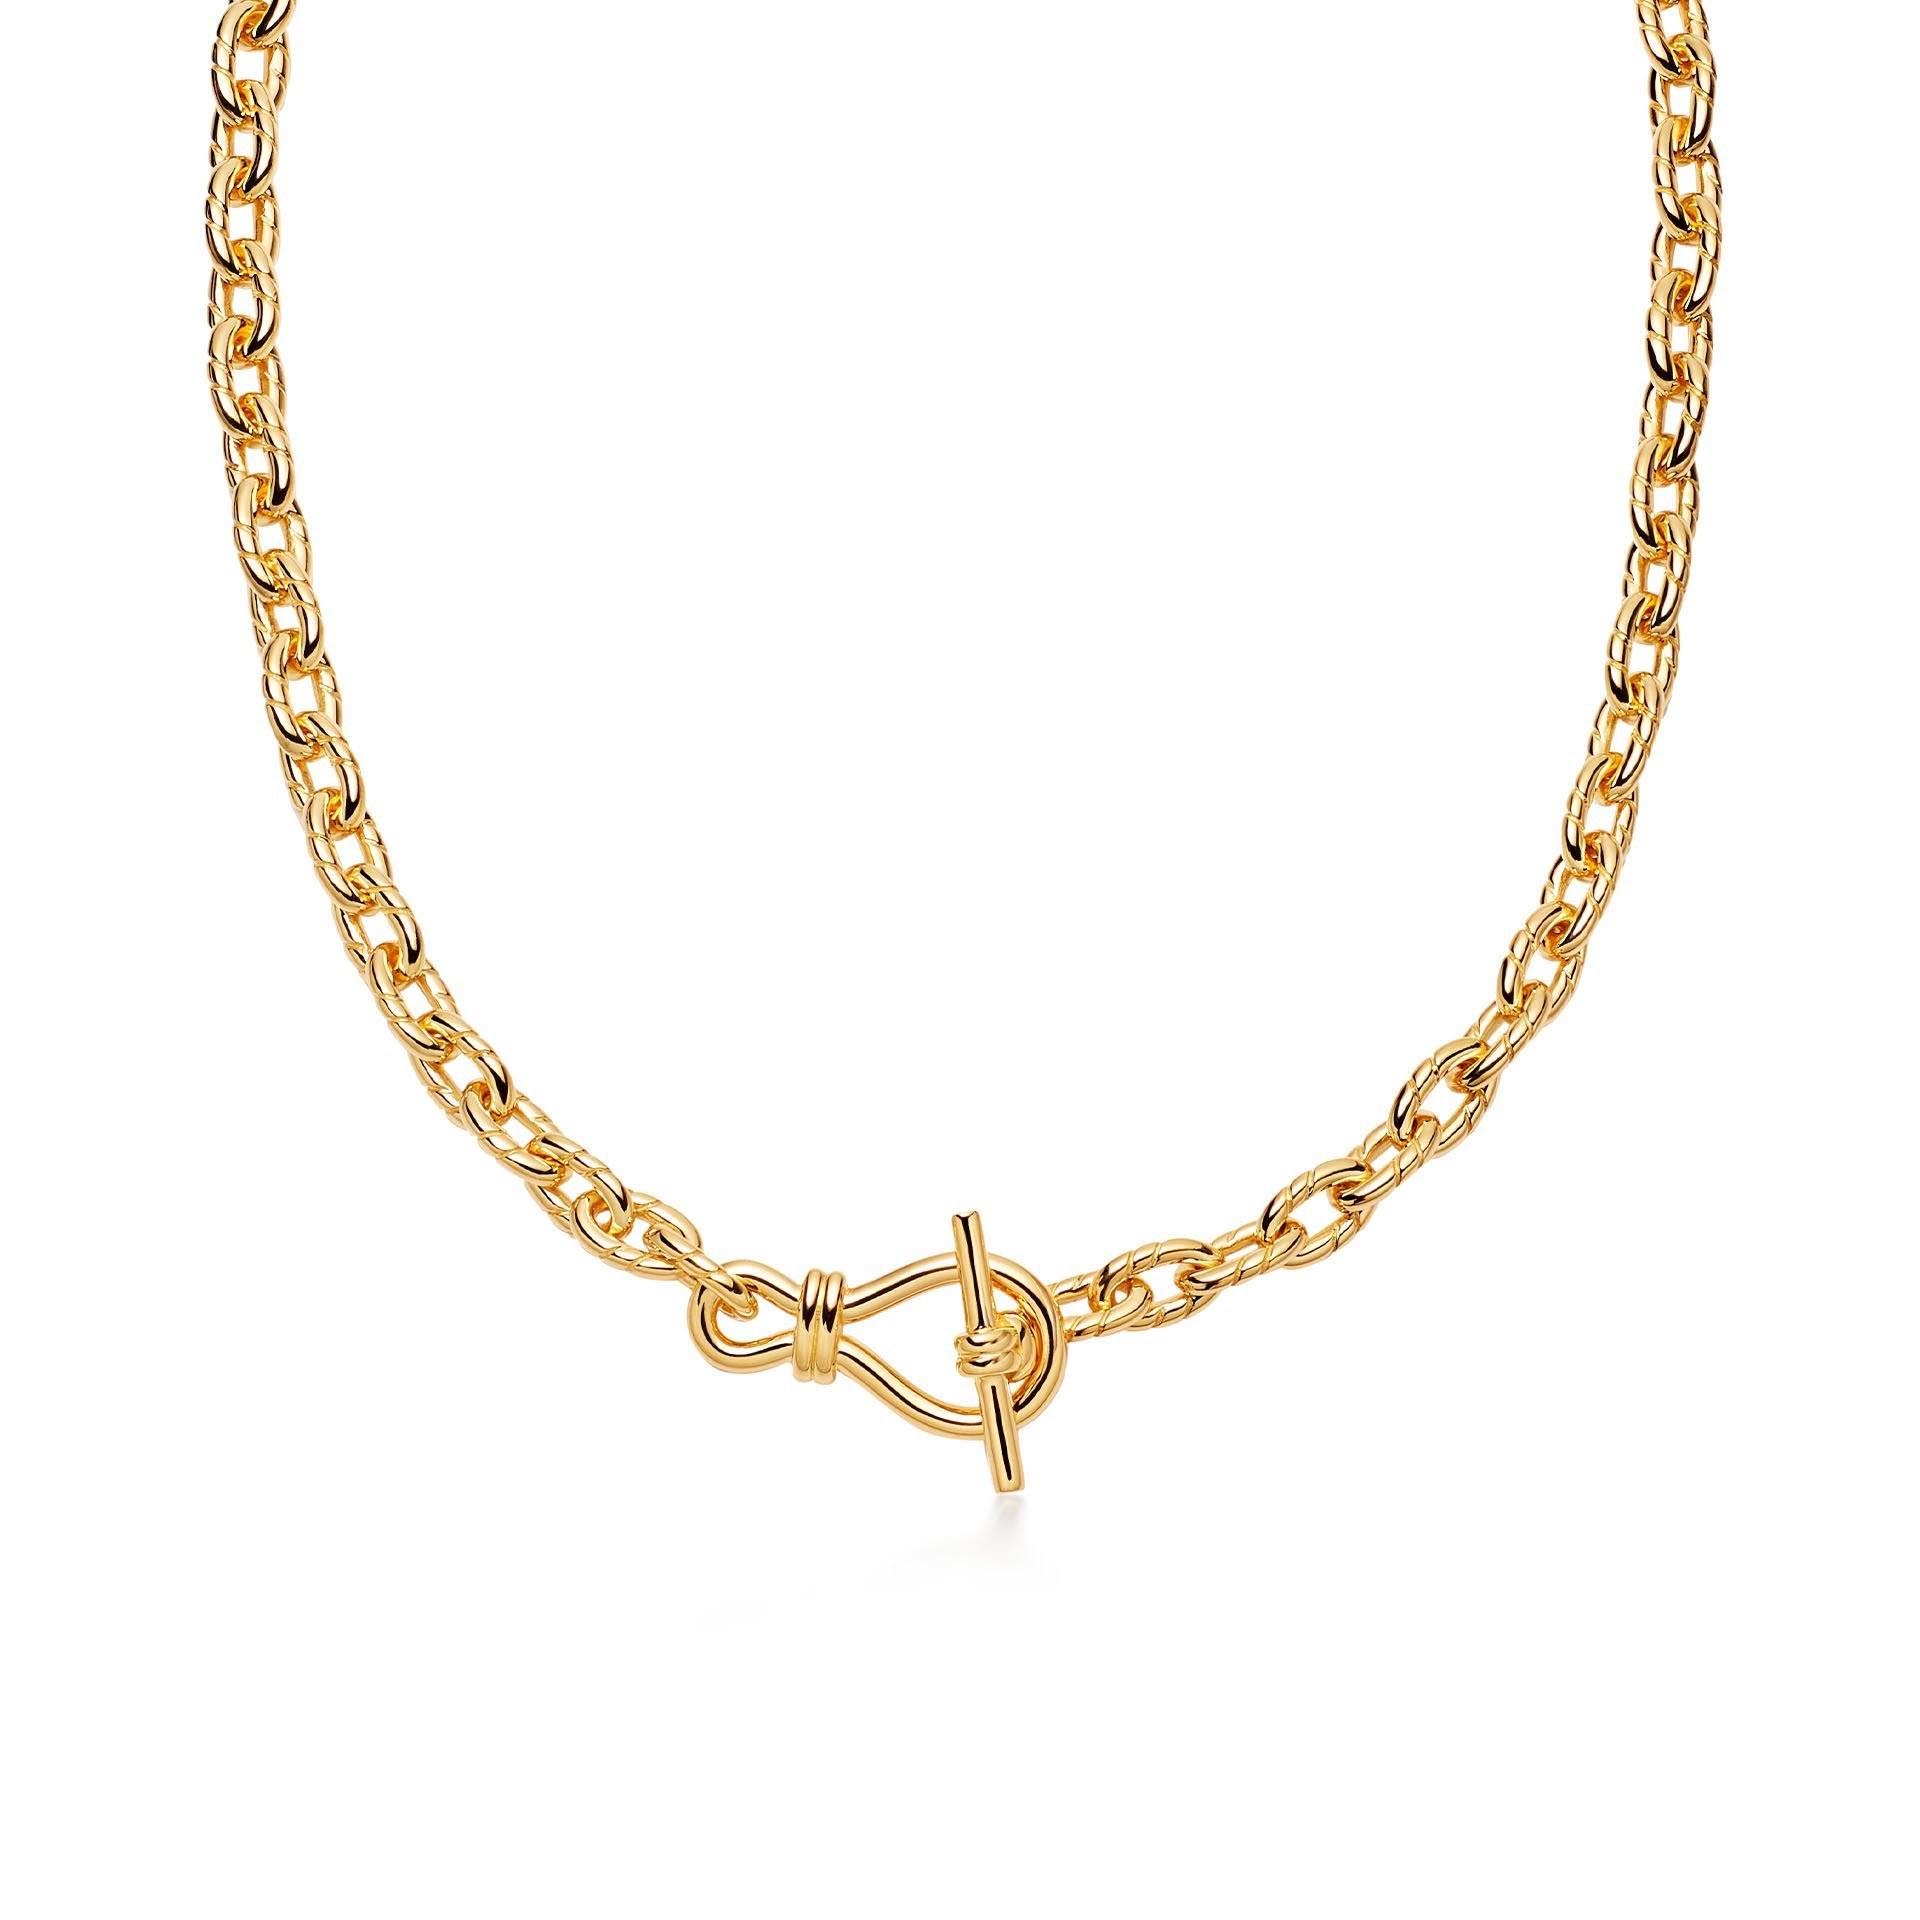 Оптовое ожерелье-цепочка OEM на заказ OEM/ODM Ювелирные изделия из 18-каратного золота с латунным покрытием Создайте ювелирные изделия своей формы